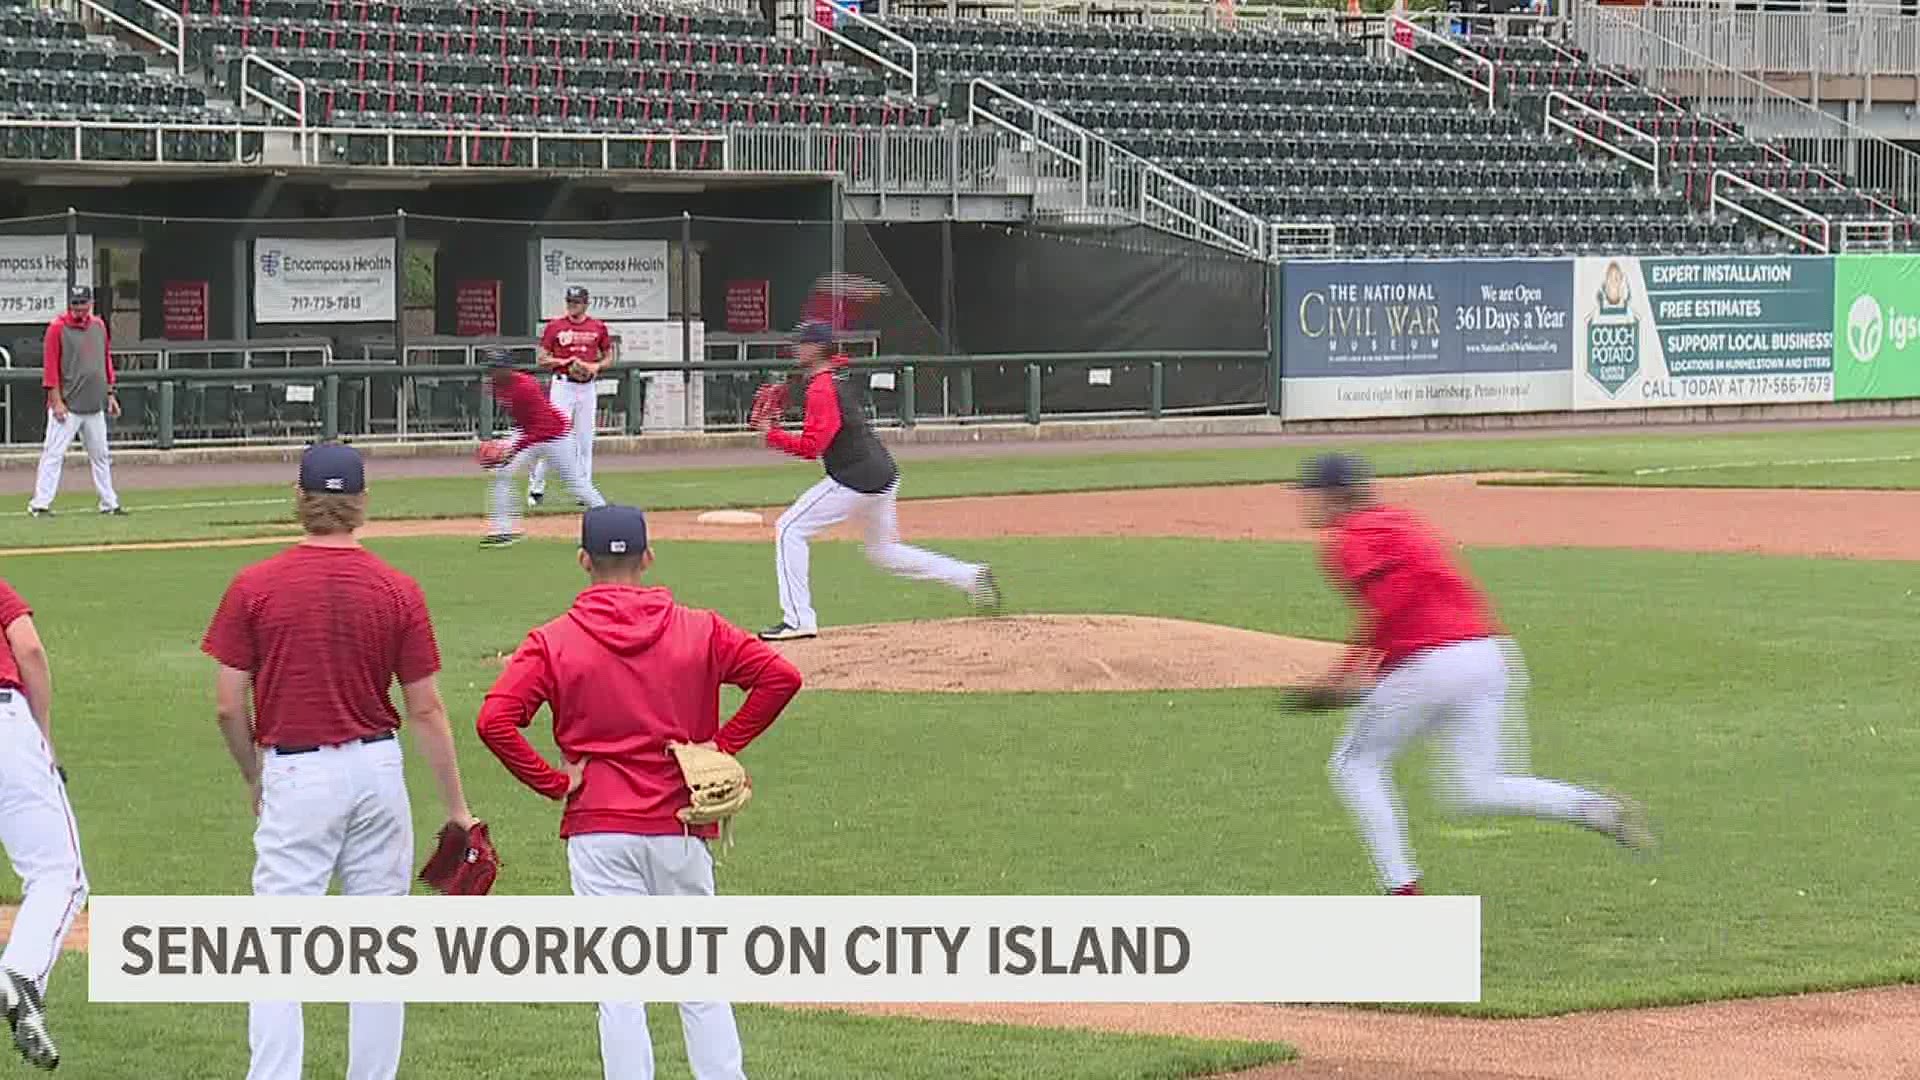 Senators Baseball is back on City Island